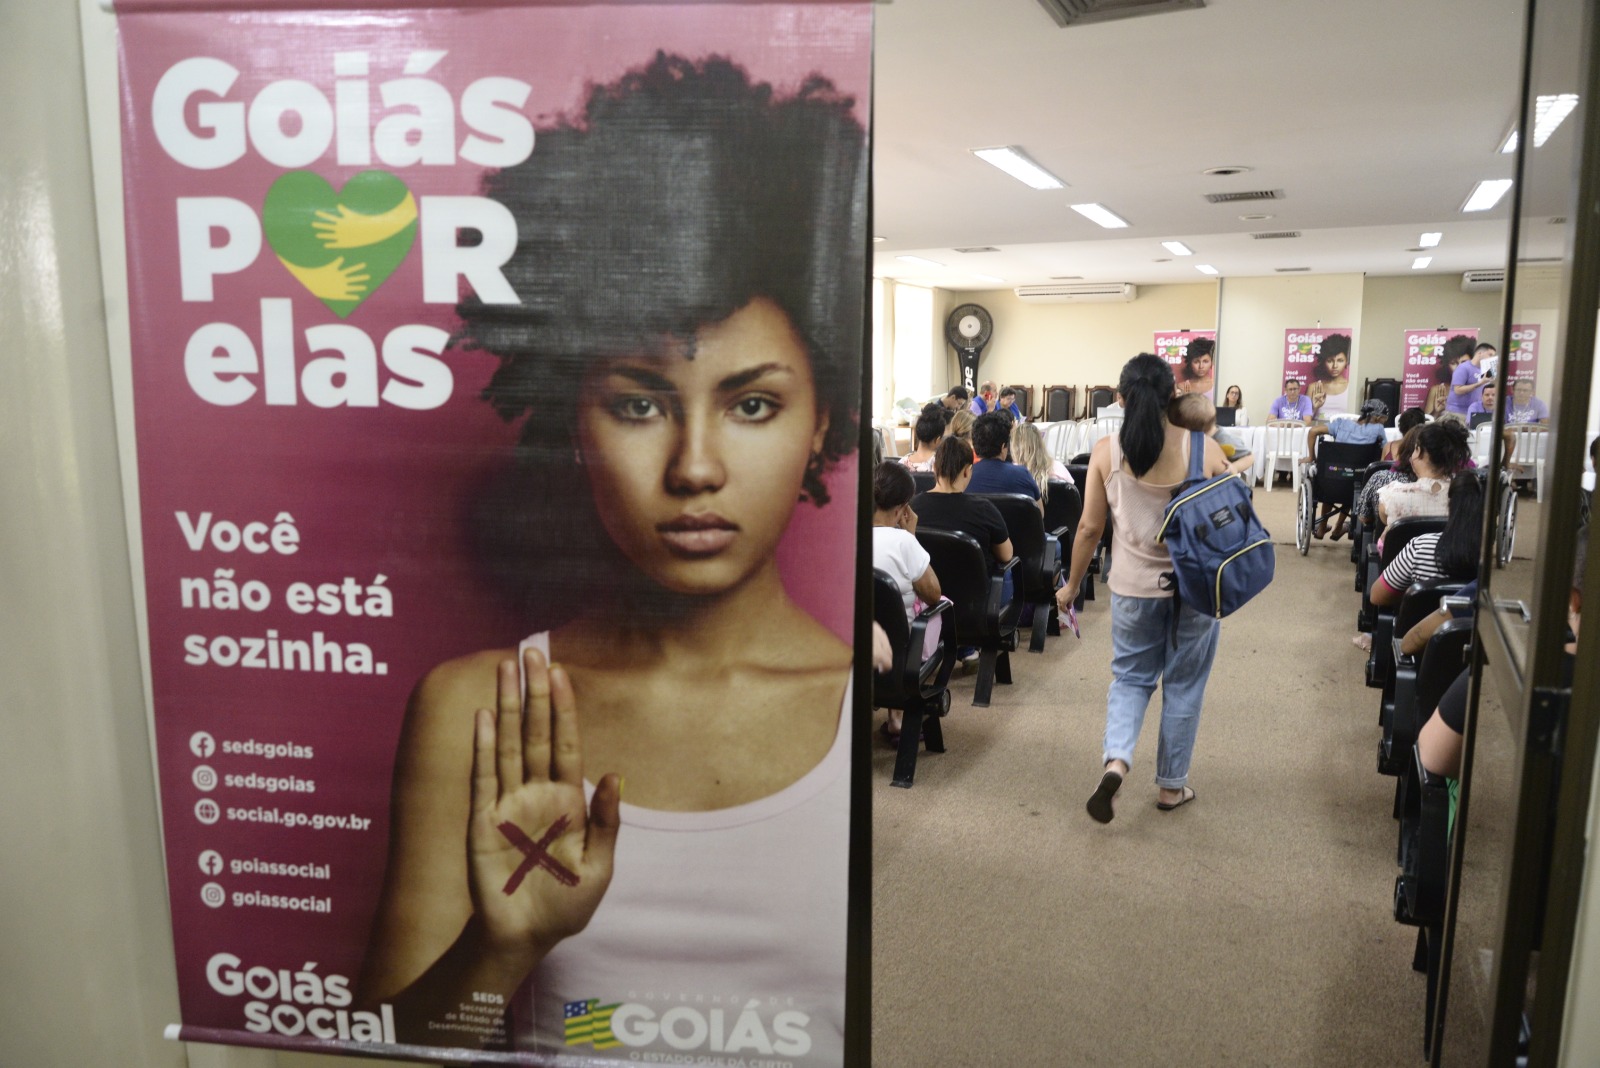 Governo entrega mais 100 cartões do Goiás por Elas na semana do Goiás Social Mulher